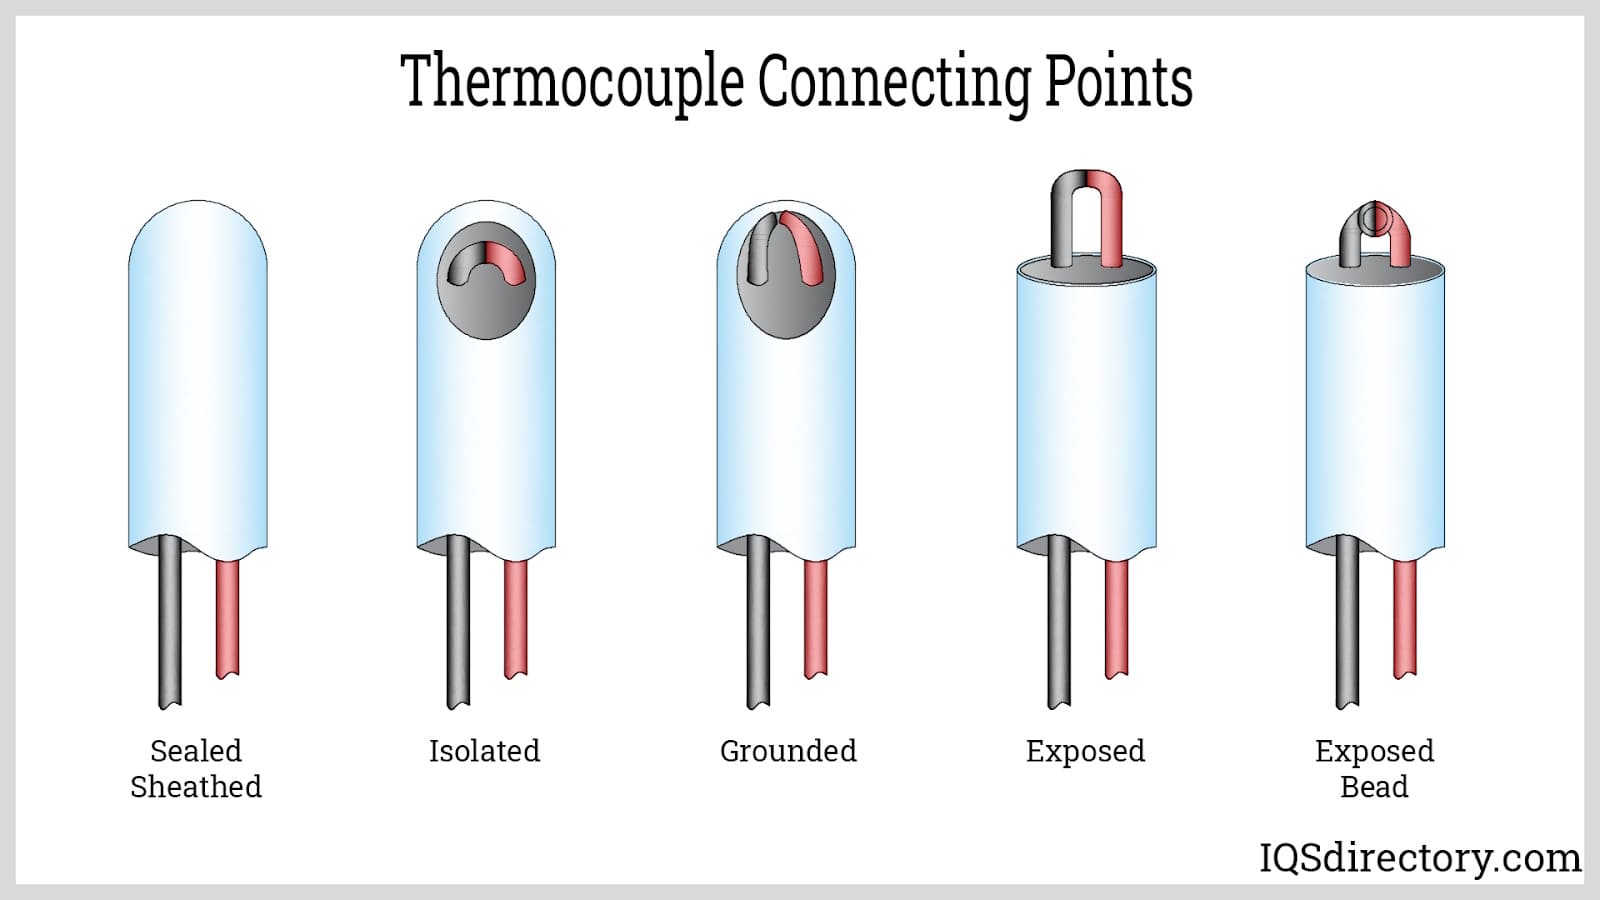 Different Types of Temperature Sensor